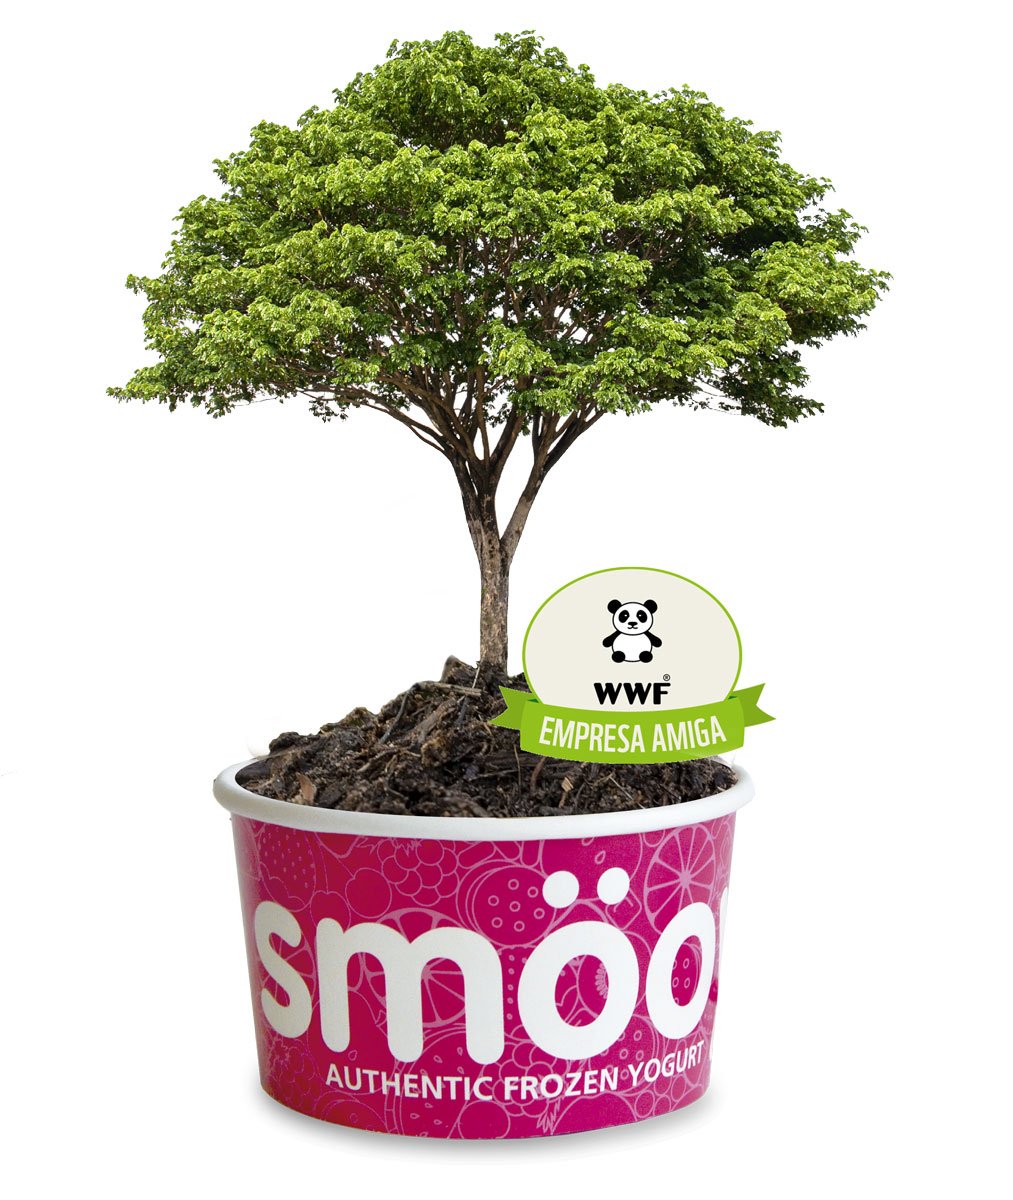 Simulación de un árbol creciendo dentro de una tarrina smöoy